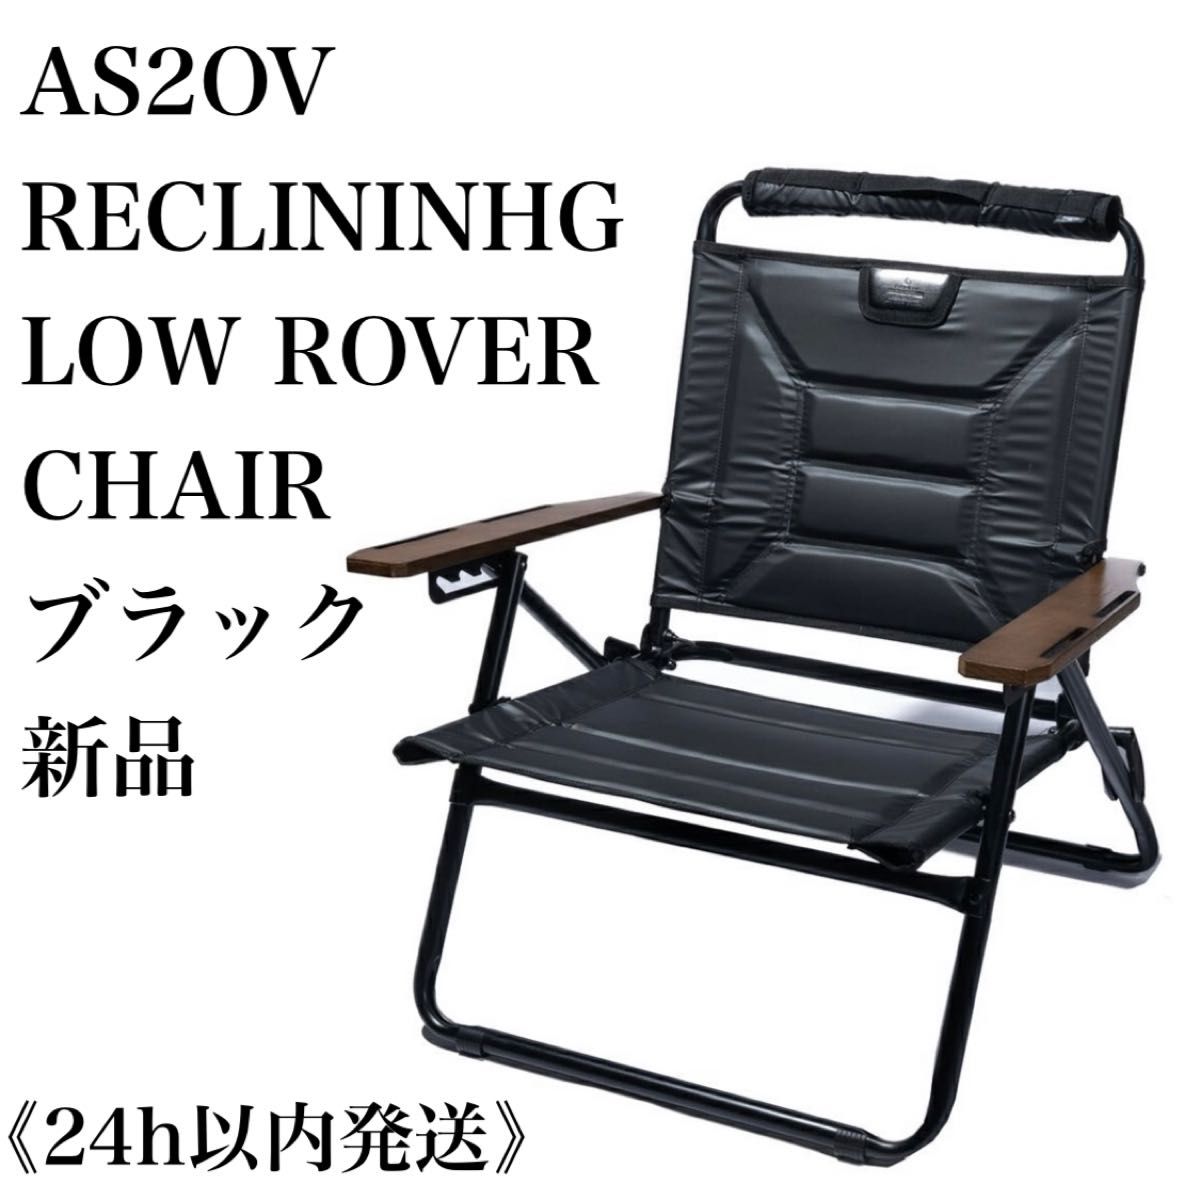 【新品】 AS2OV RECLINING LOW ROVER CHAIR アッソブ ローバーチェア 2022リニューアル版